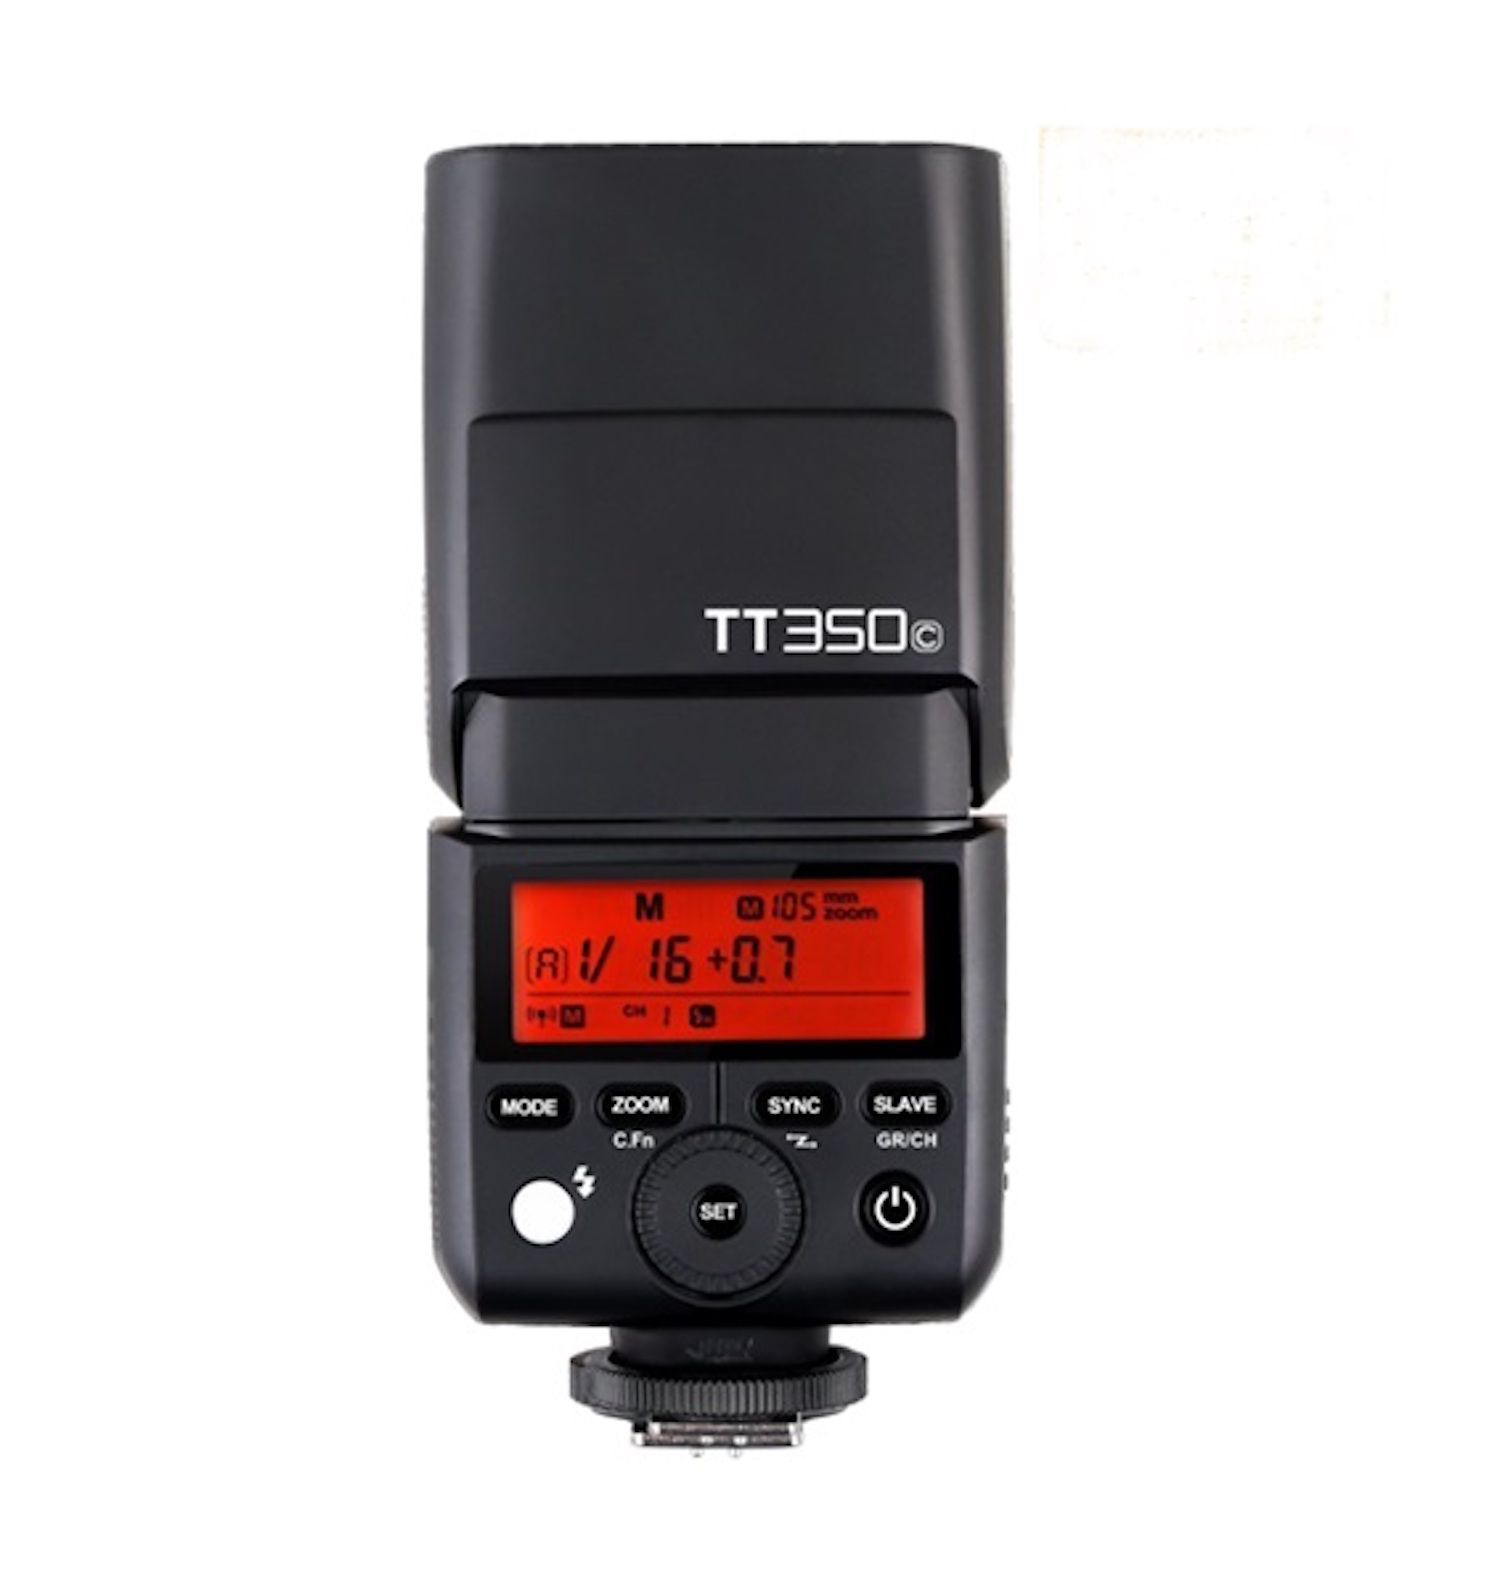 & for HSS Canon GODOX Aufsteckblitz 2.4GHz TTL (36, HSS) Mini TTL Canon Flash für